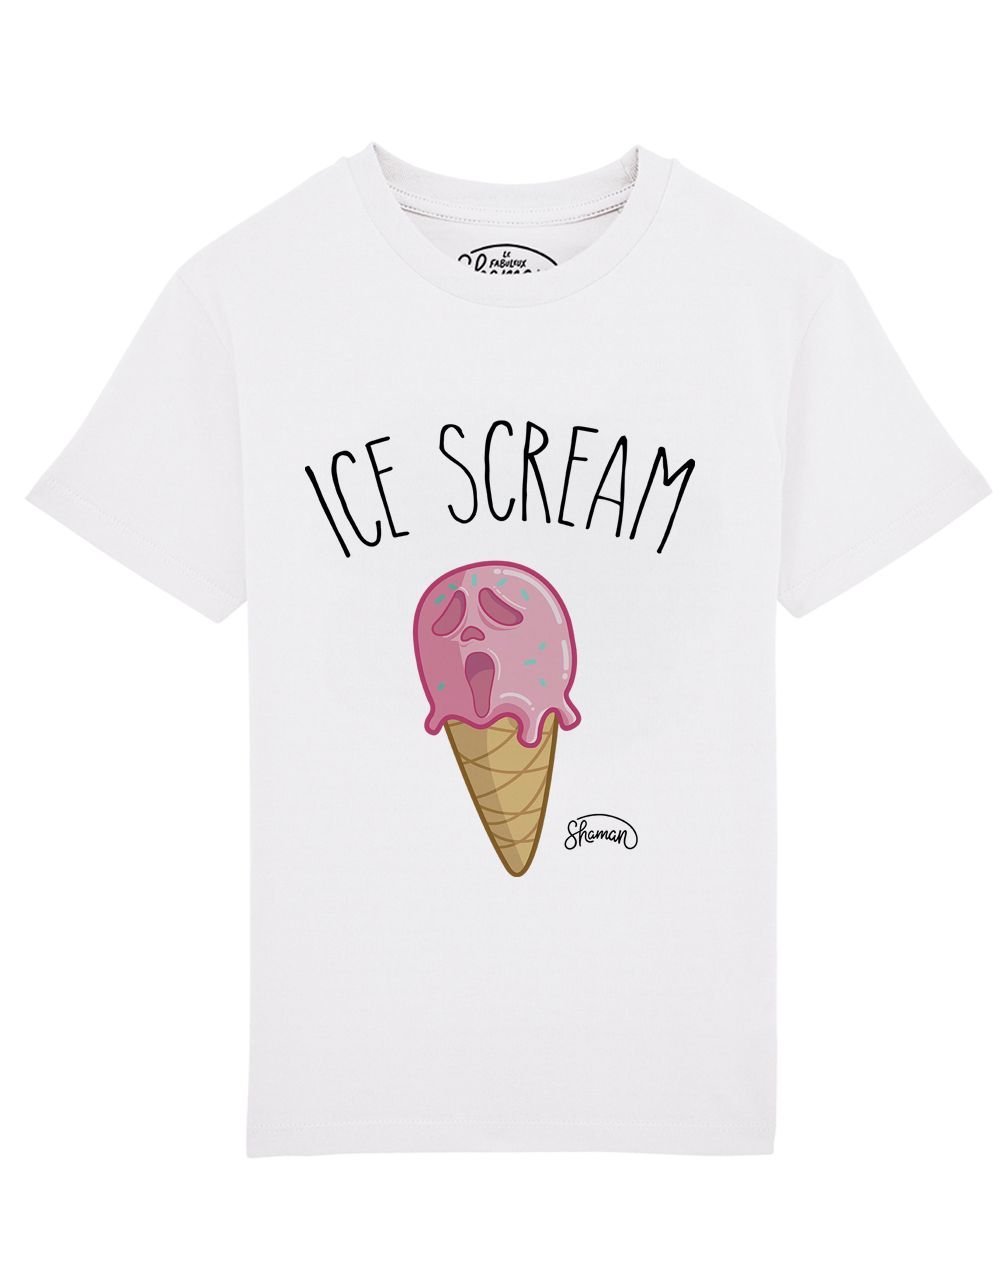 Tee shirt ice cream